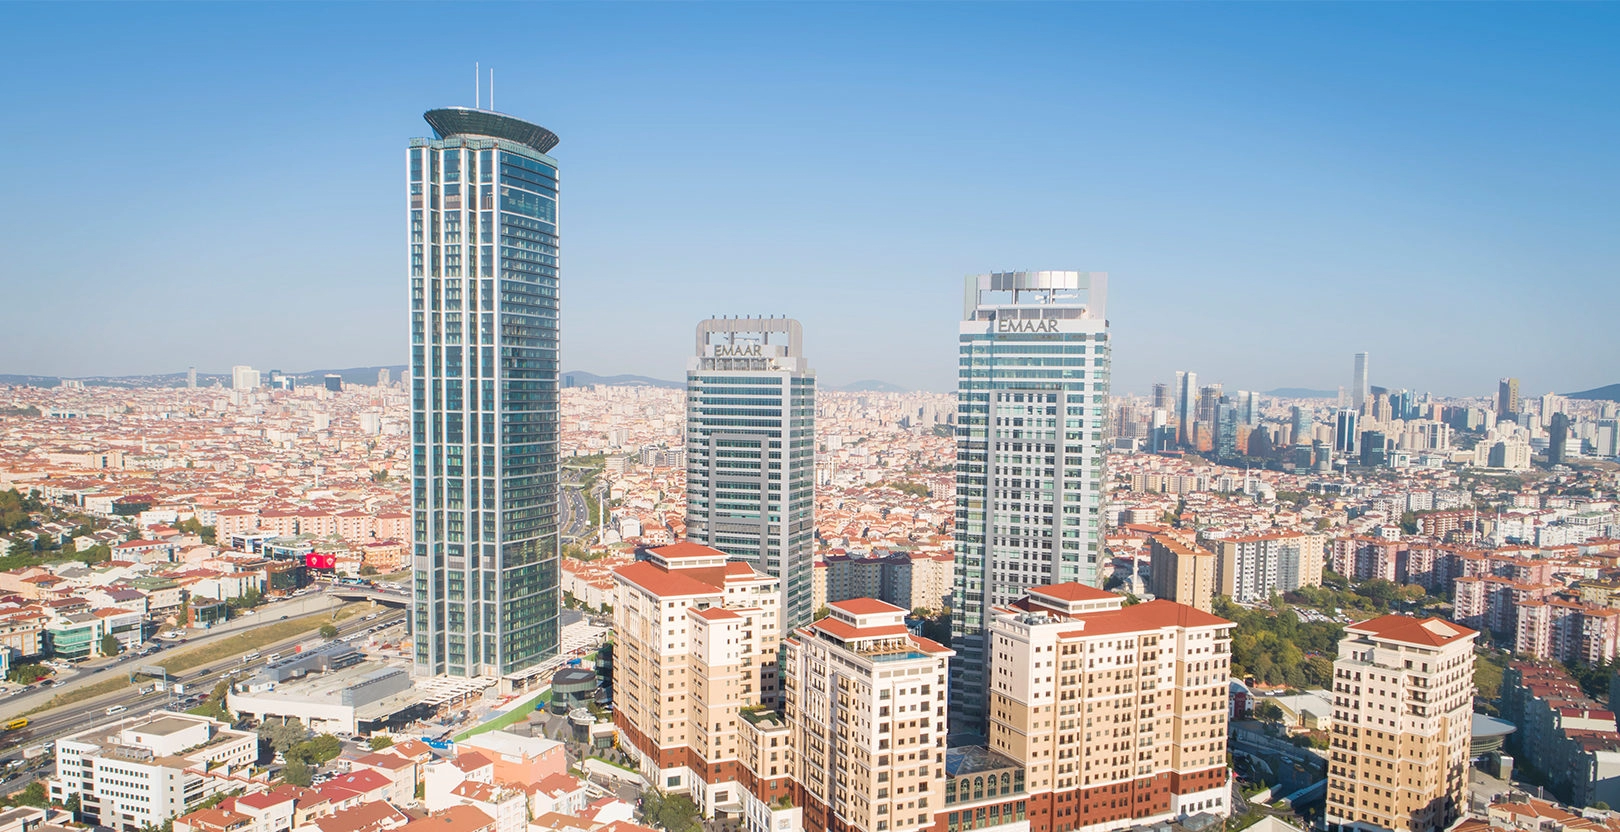 يعد مجمع إعمار سكوير واحدا من أكبر مراكز التسوق في تركيا